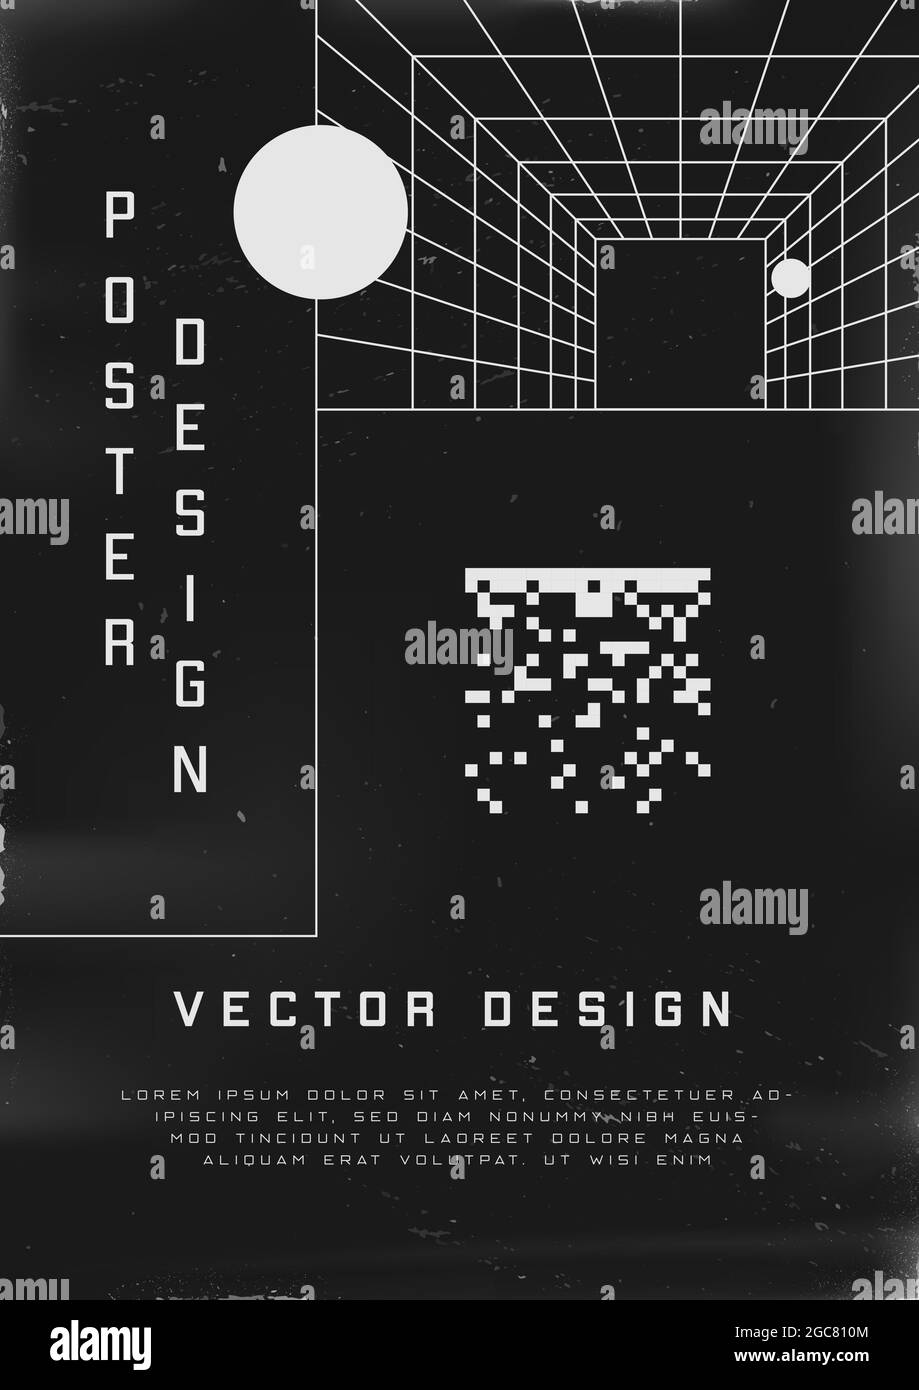 Poster dal design retrovuturistico. Poster in stile cyberpunk anni '80 con tunnel prospettico e pixel quadrati a 8 bit. Shabby graffiato modello volantino per il Illustrazione Vettoriale